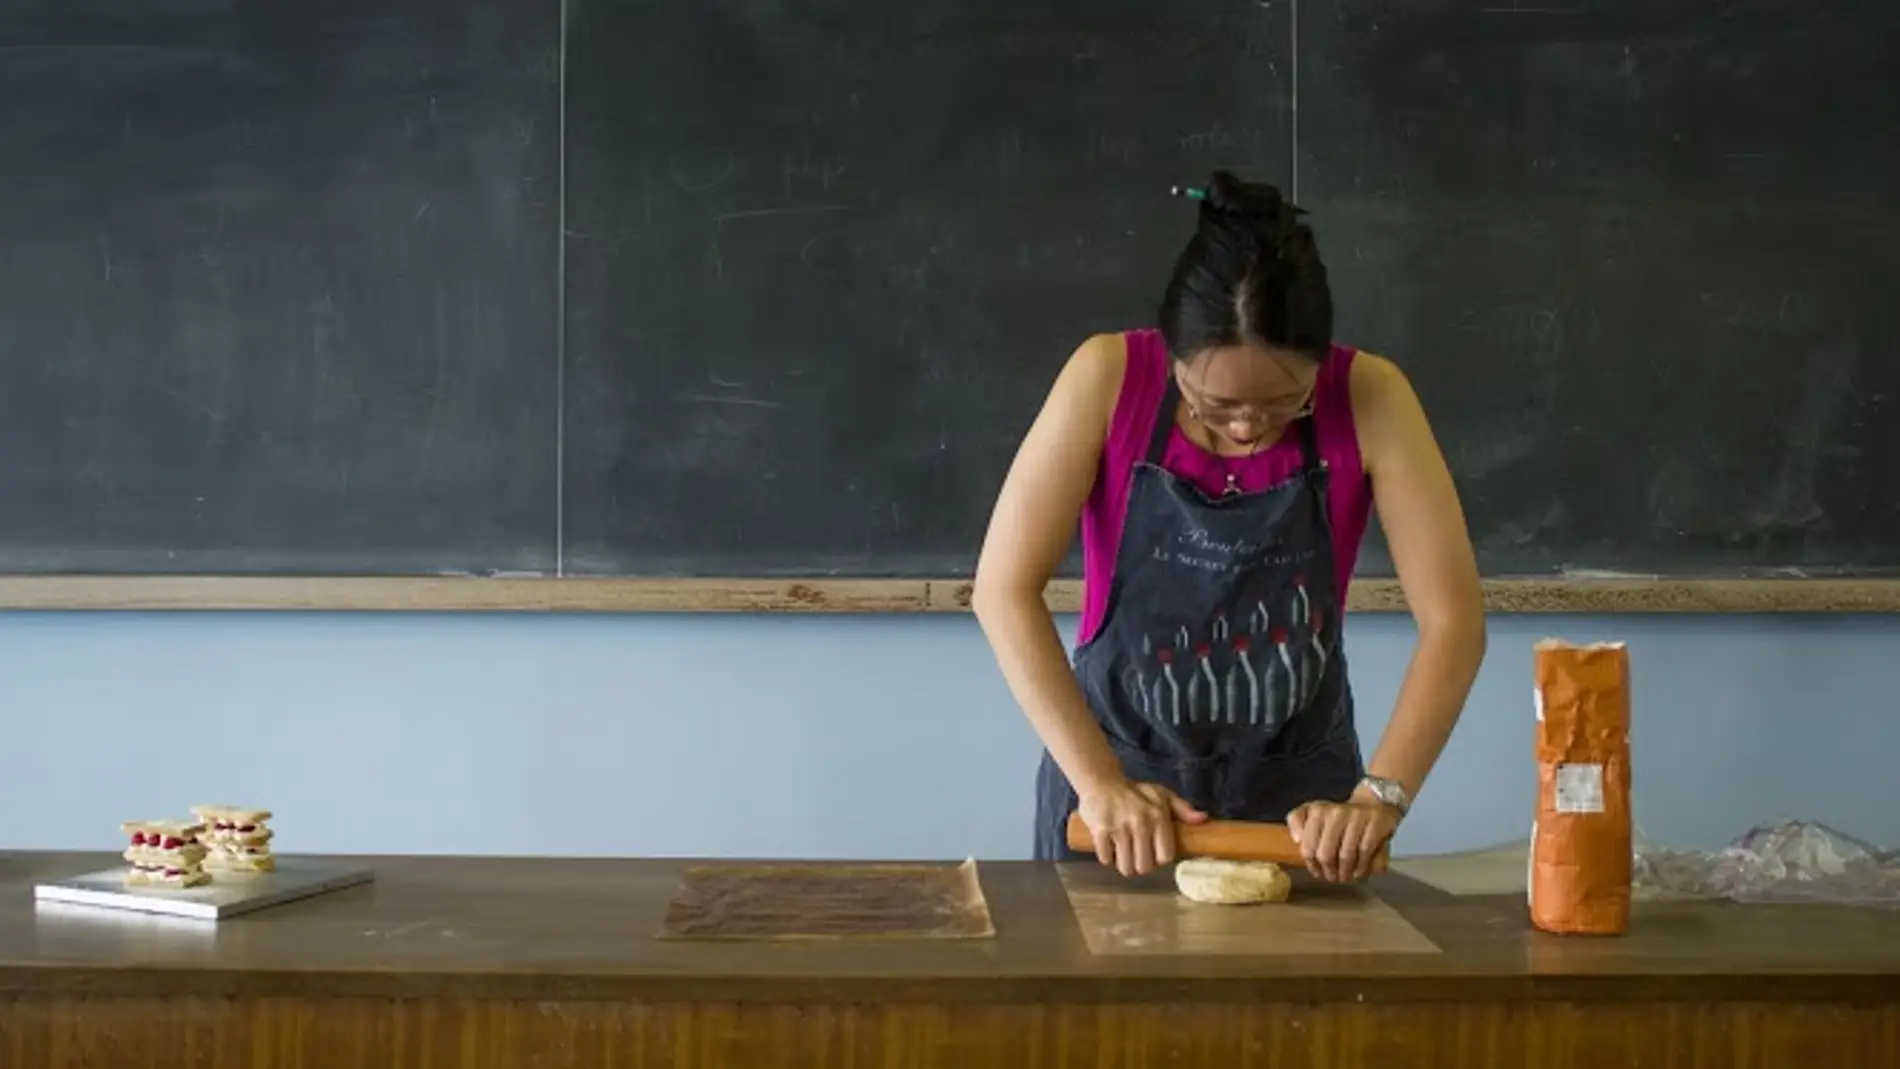 La receta de las clases de Cheng lleva algo más que pizarras y tizas.